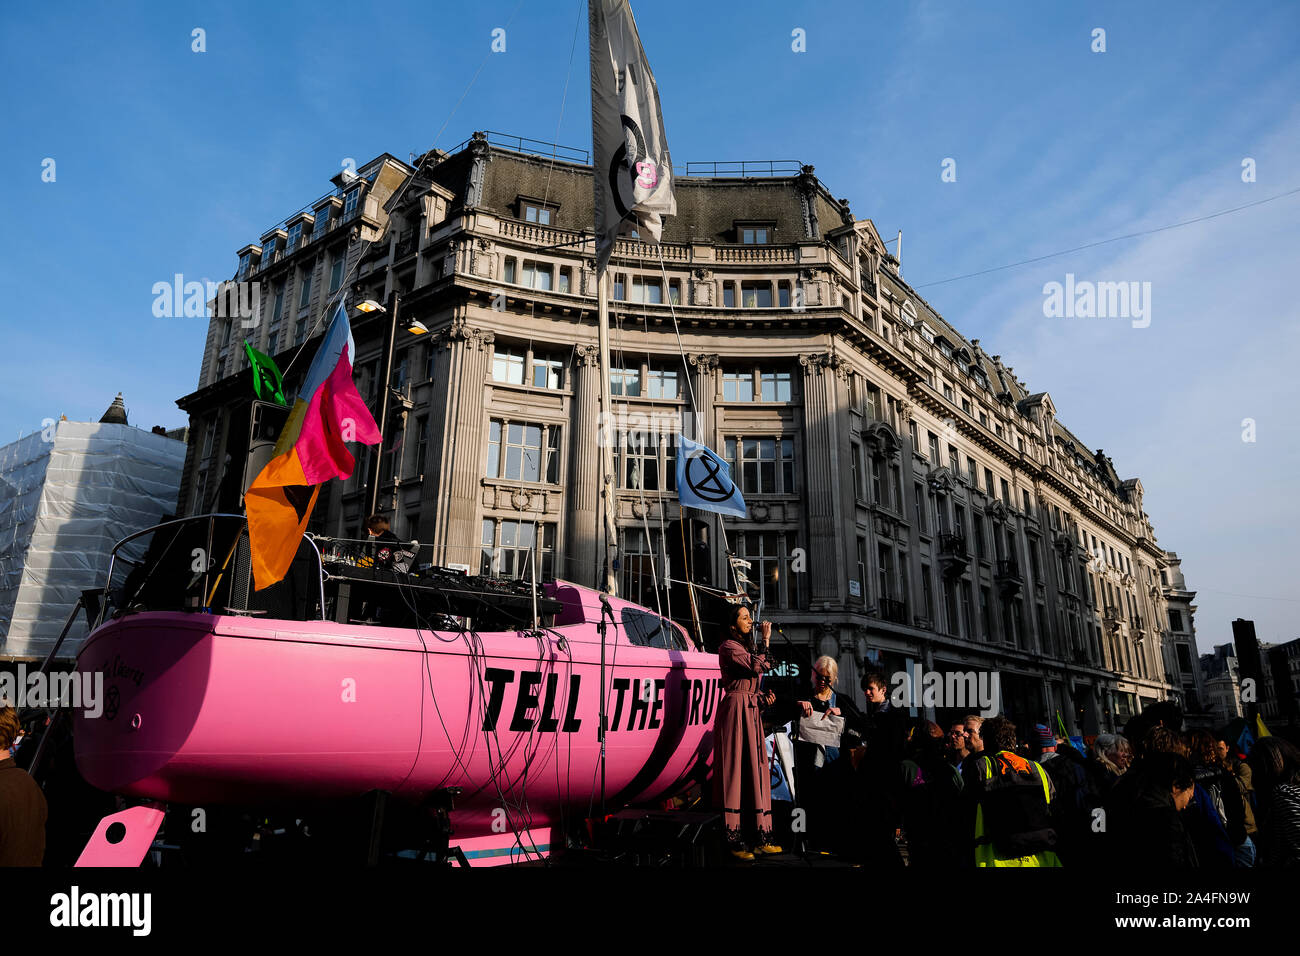 Londres, Royaume-Uni. Un yacht rose avec "Tell the Truth" écrit sur elle se trouve au milieu d'Oxford Circus pendant la protestation de l'extinction. Banque D'Images